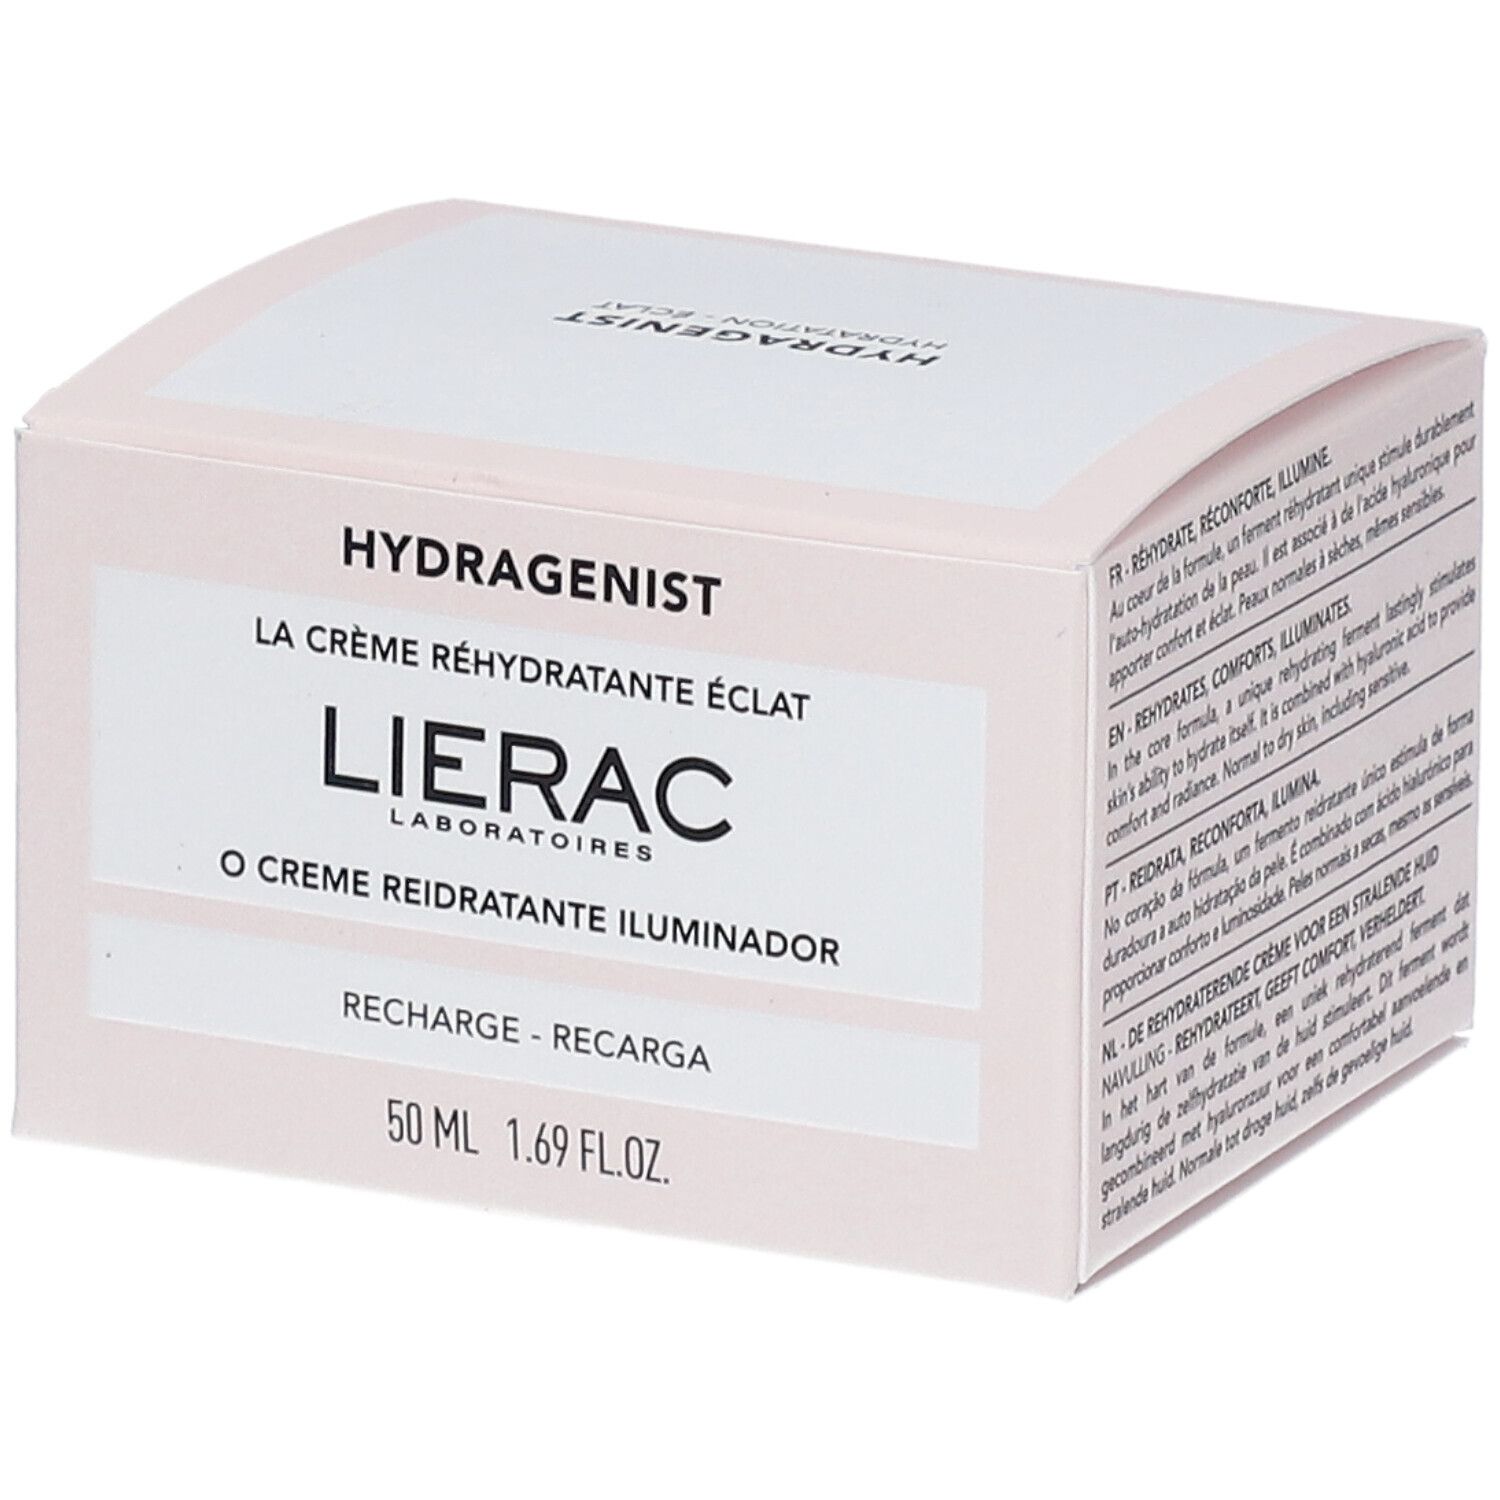 Lierac Hydragenist La Crème réhydratante éclat recharge